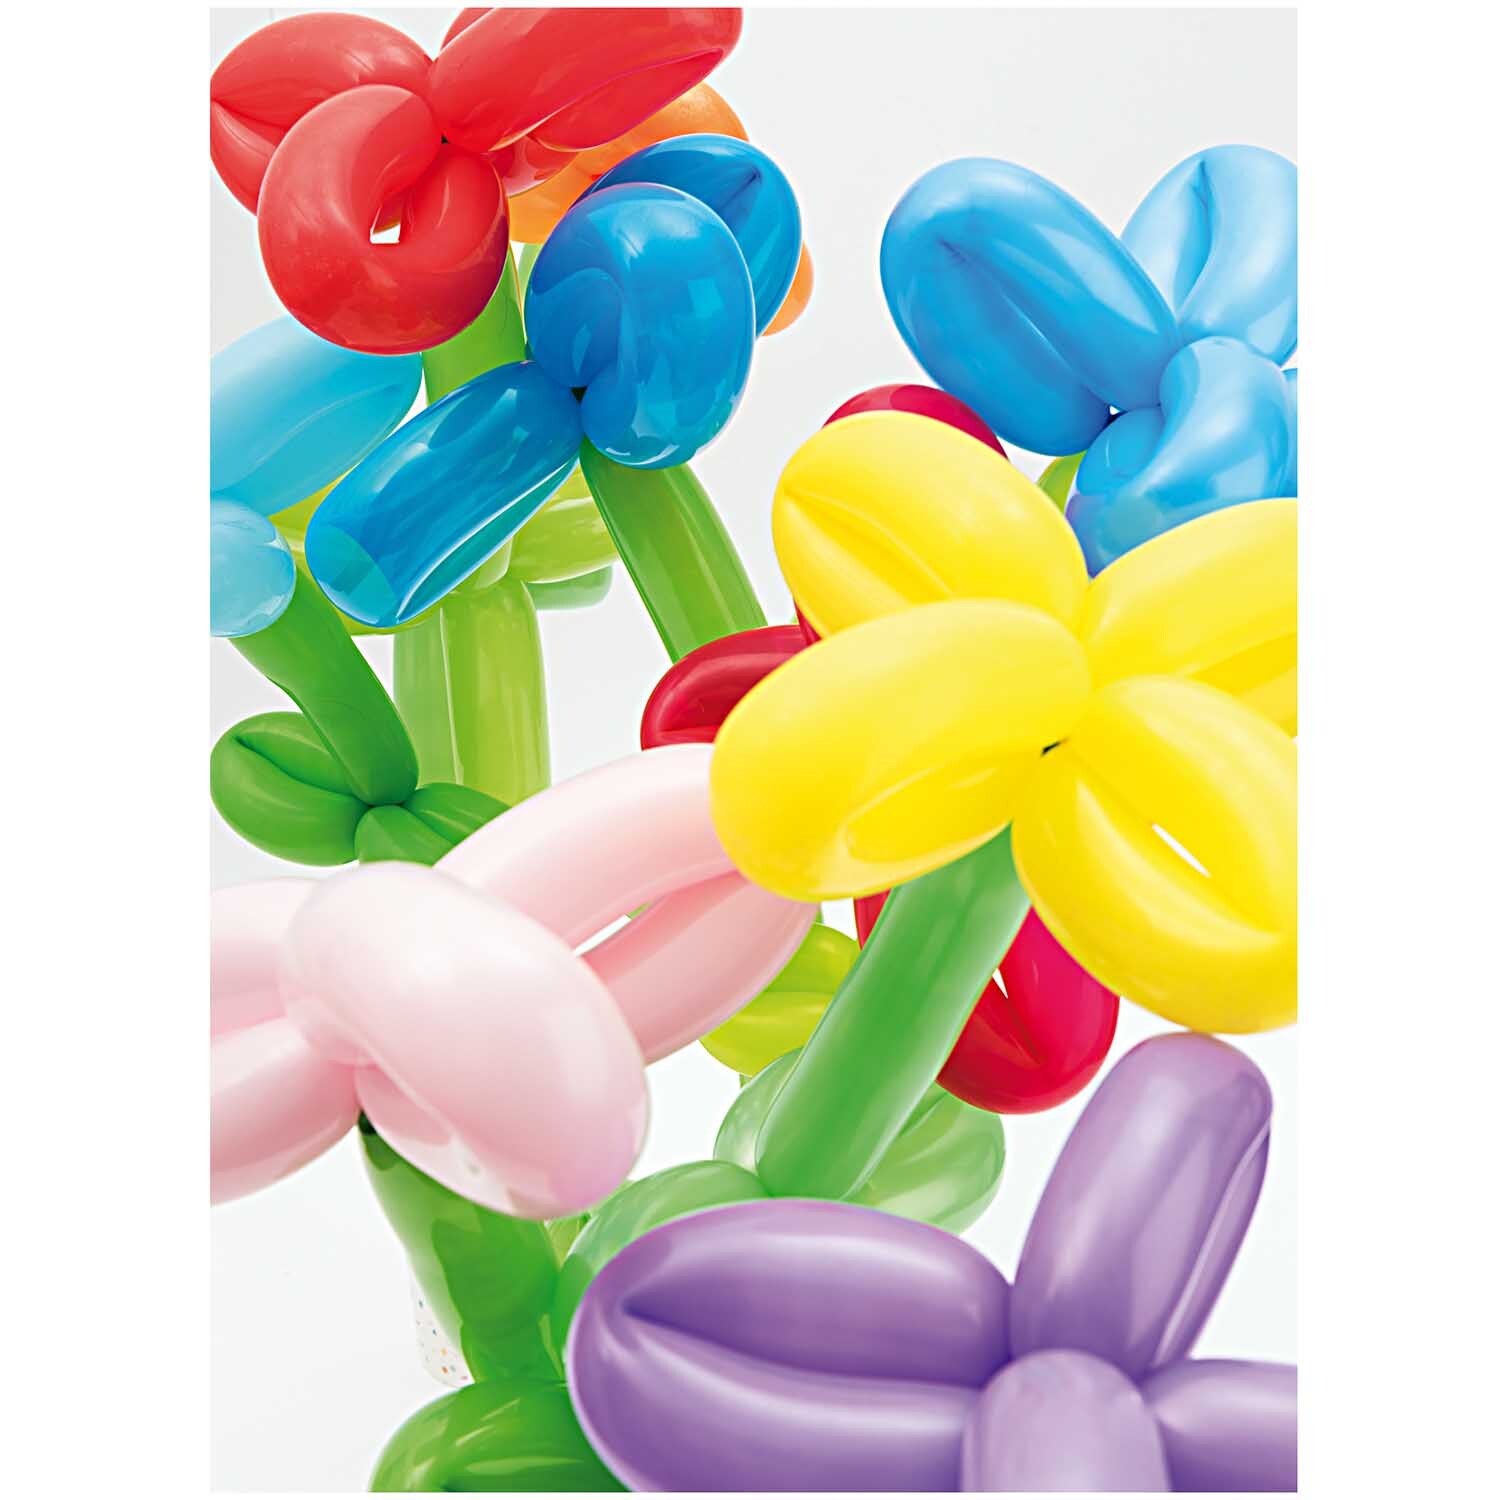 Luftballons zum Modellieren mehrfarbig 30cm 12 Stück